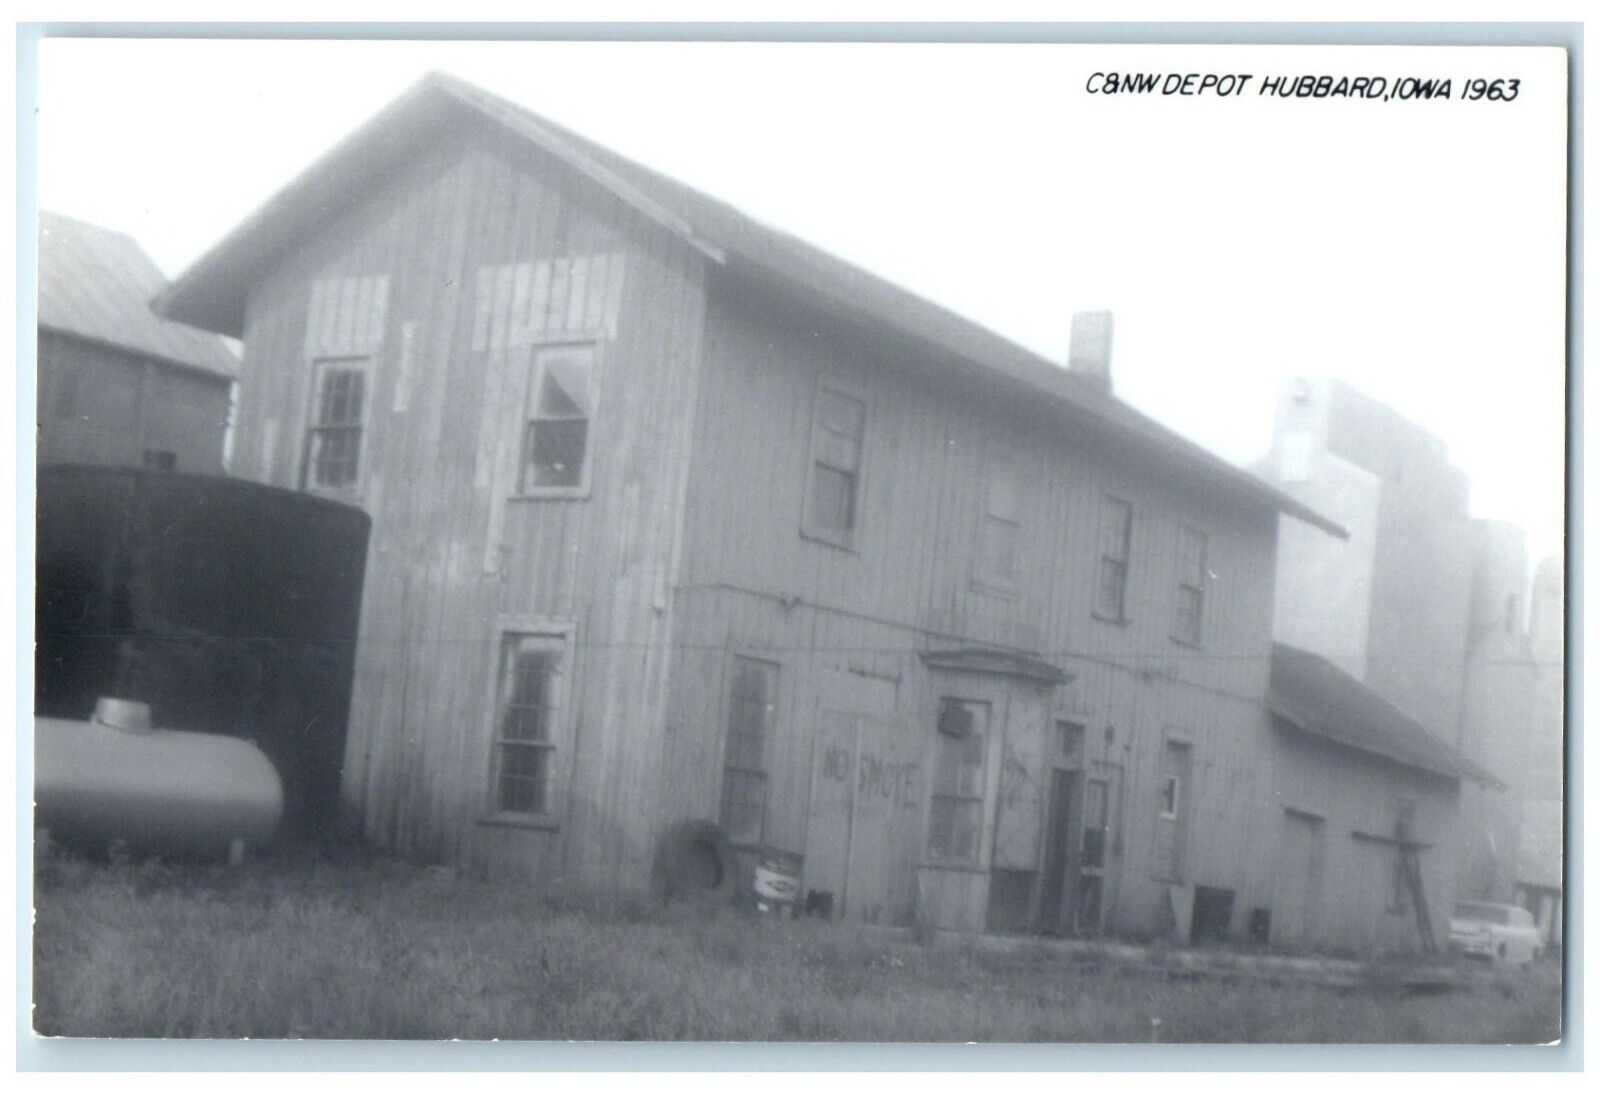 c1963 C&NW Depot Hubbard Iowa Railroad Train Depot Station RPPC Photo Postcard